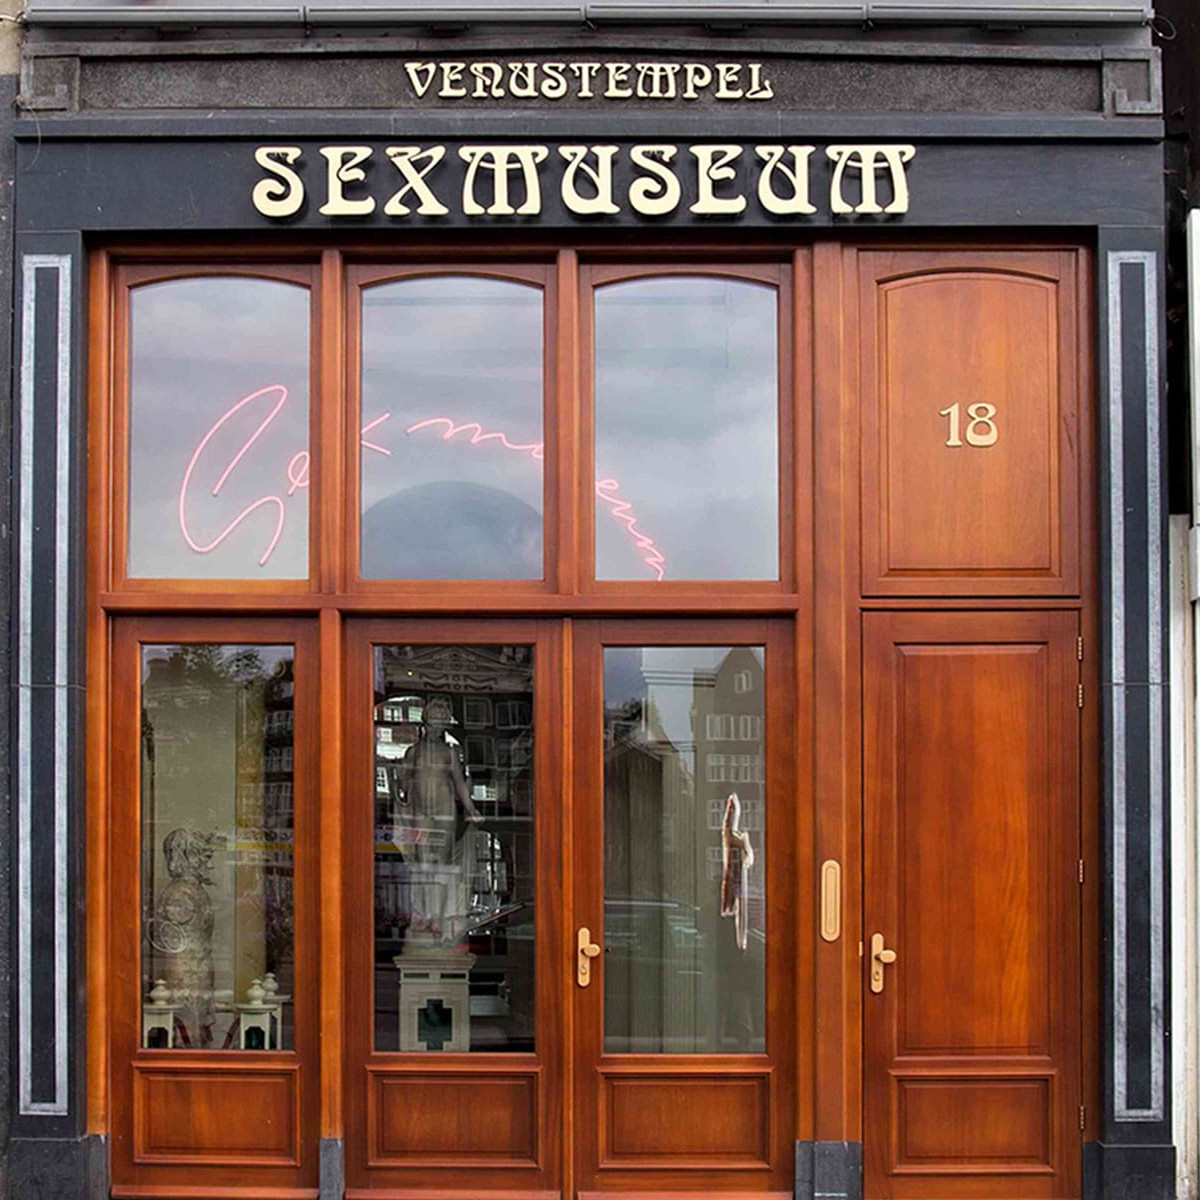 Sex museum amsterdam